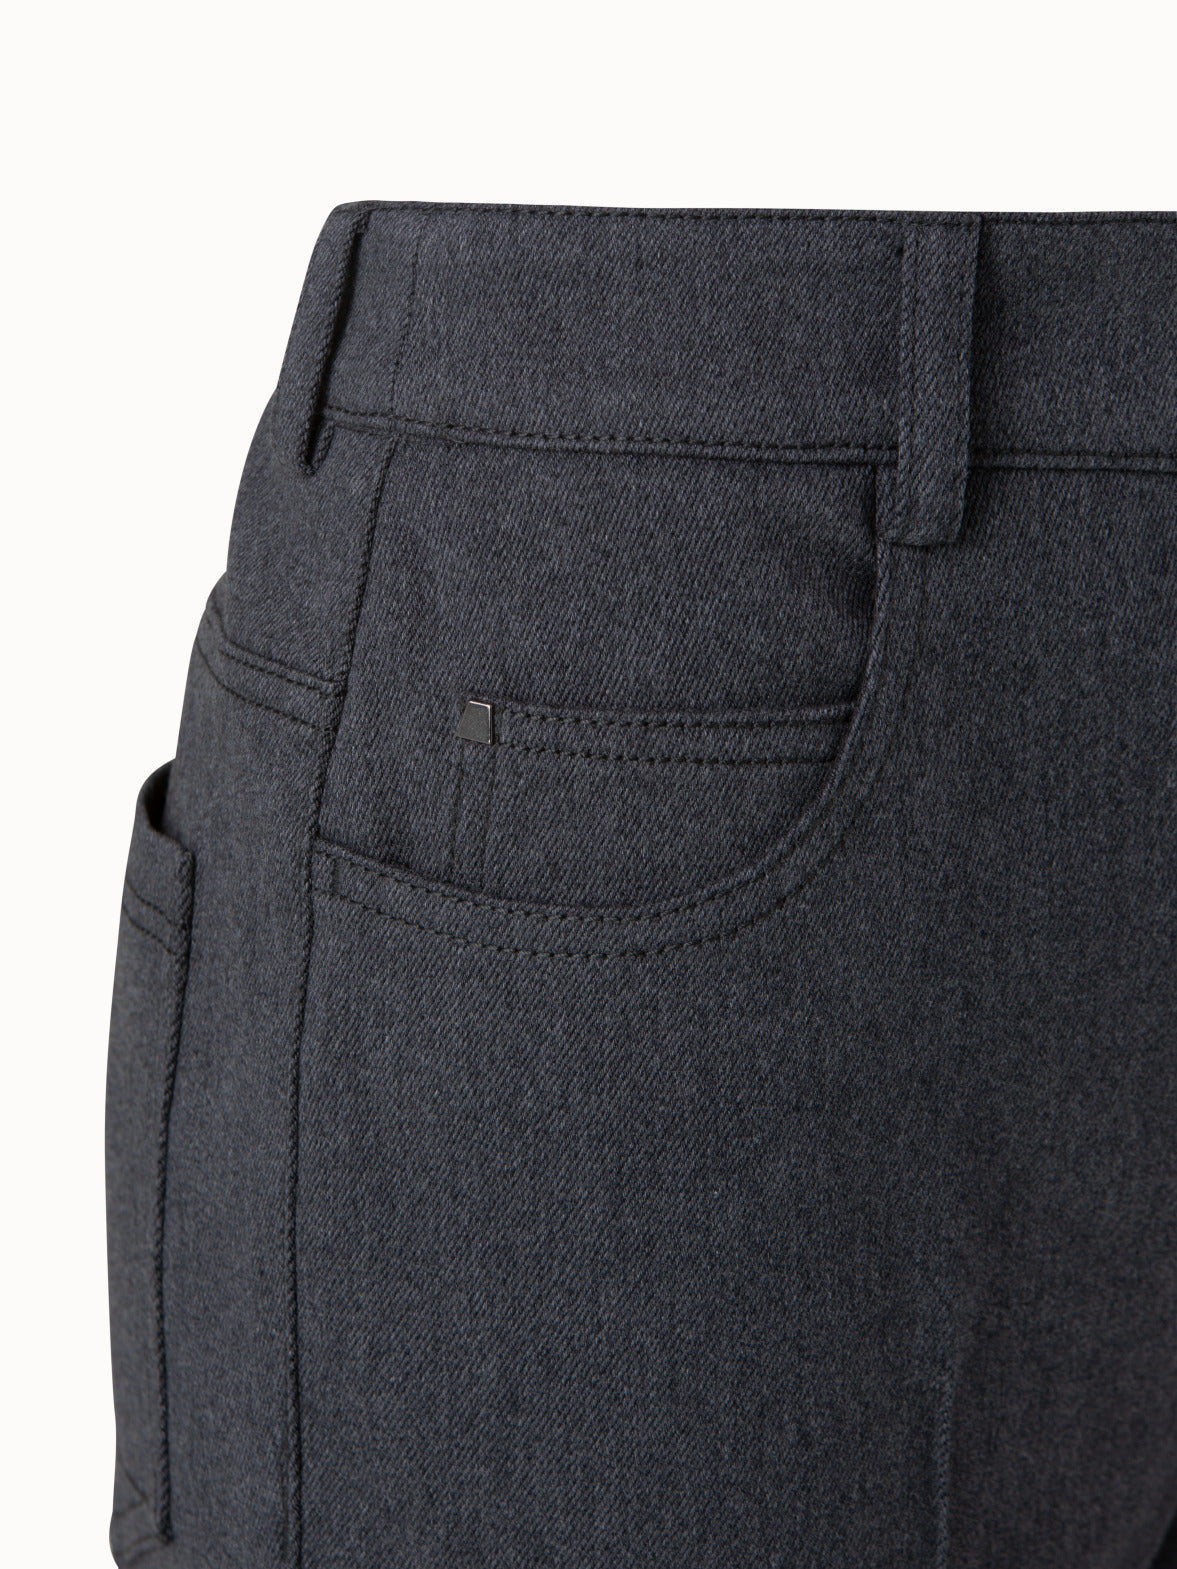 Jeans Men Pants Casual Cotton Denim| Alibaba.com